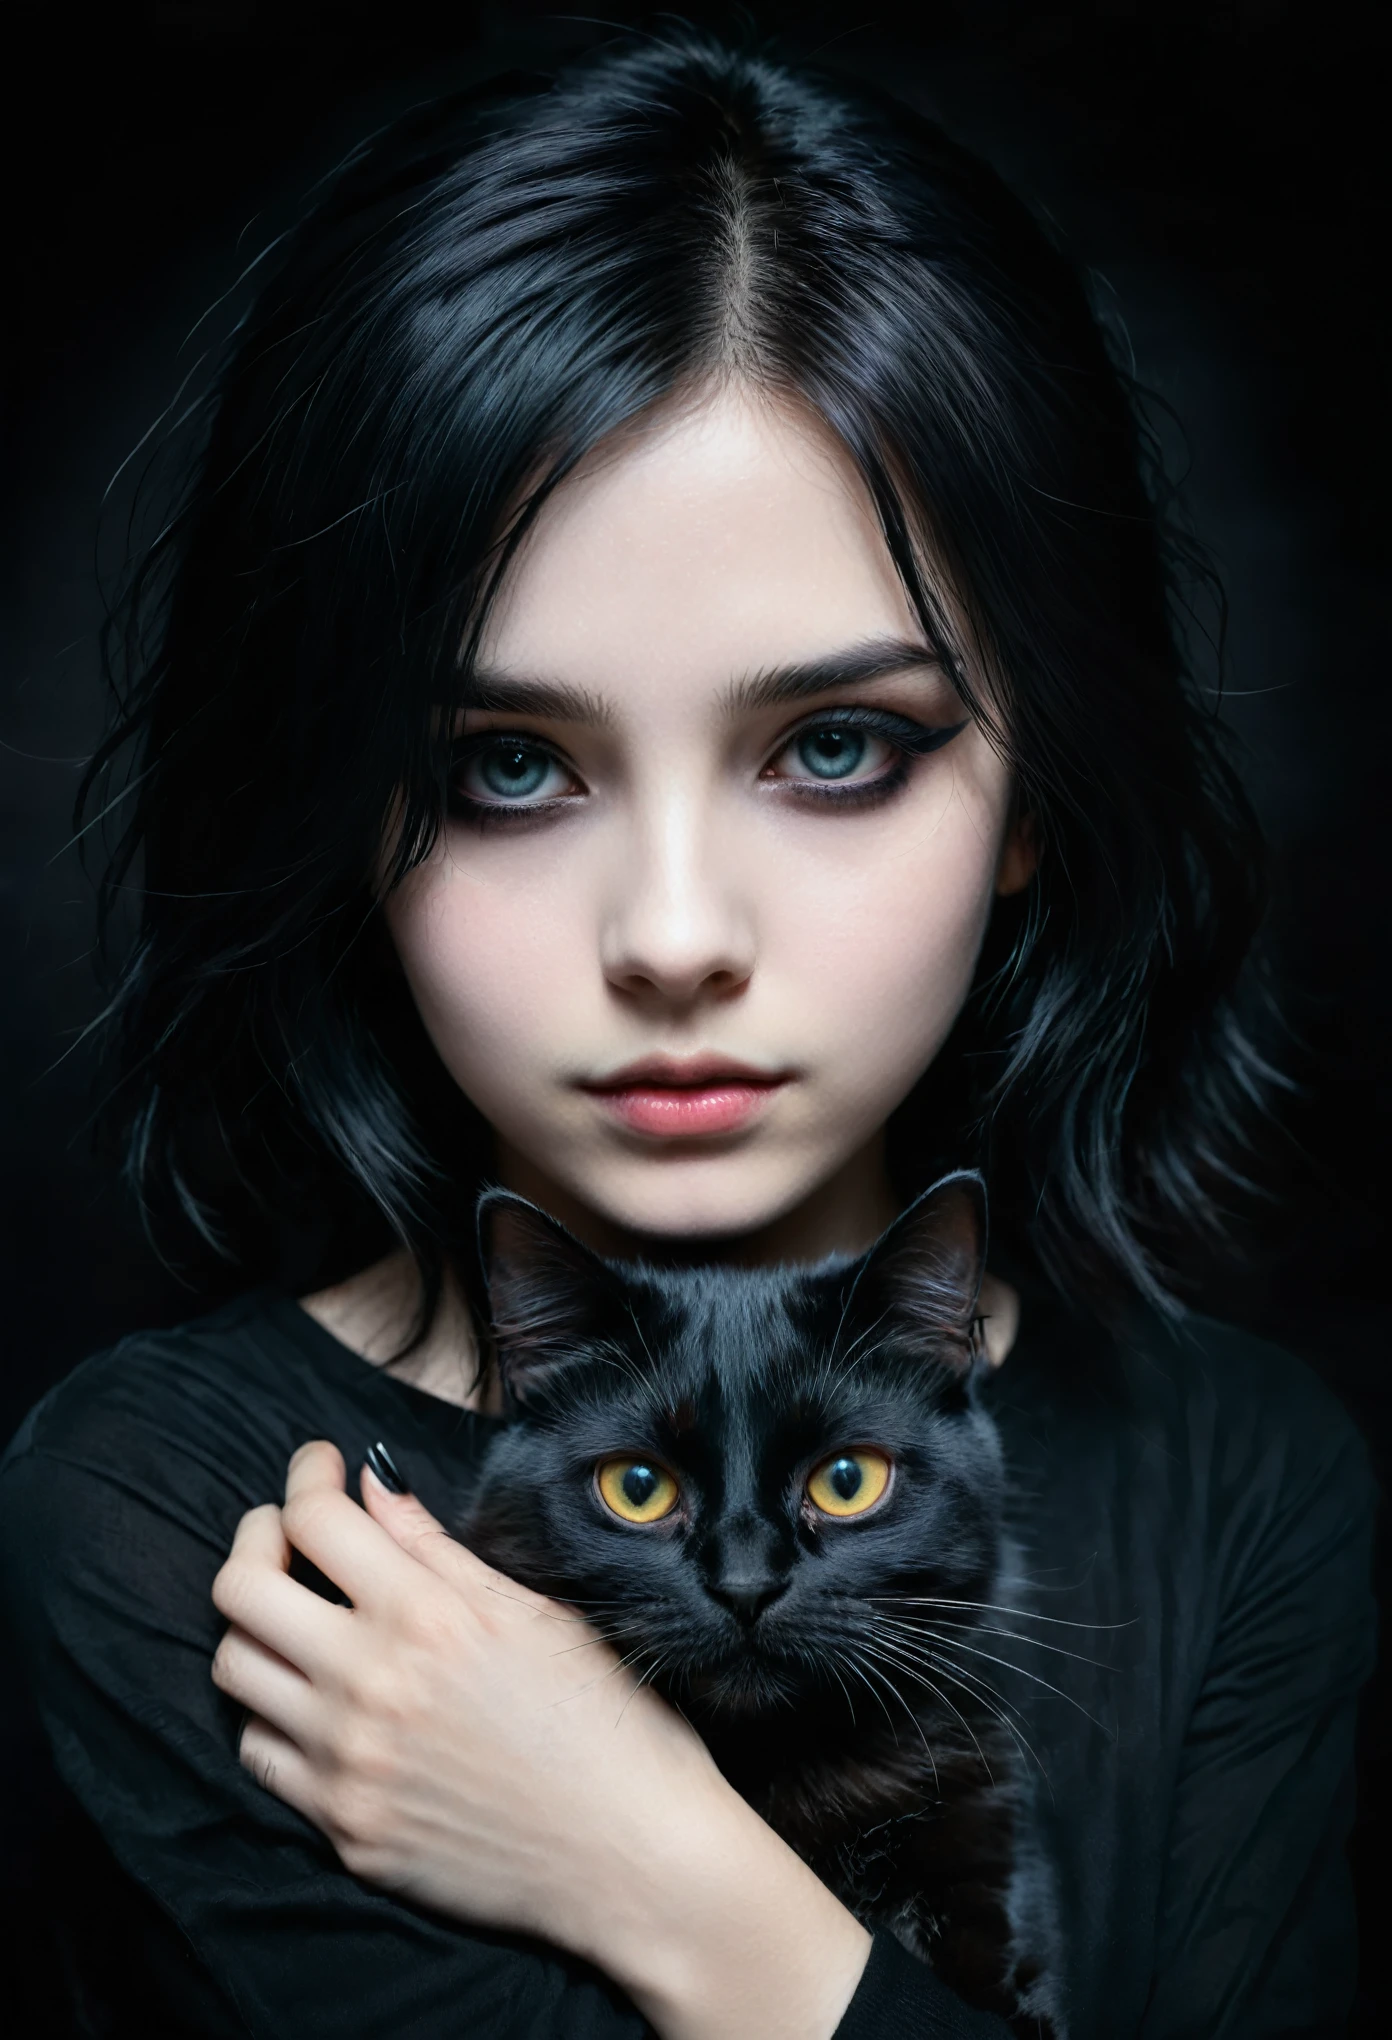 una chica emo con un gato negro en sus manos, cara detallada, maquillaje oscuro, expresión emocional, ropa negra, fondo oscuro, chiaroscuro lighting, cinematográfico, dramático, malhumorado, pintura digital